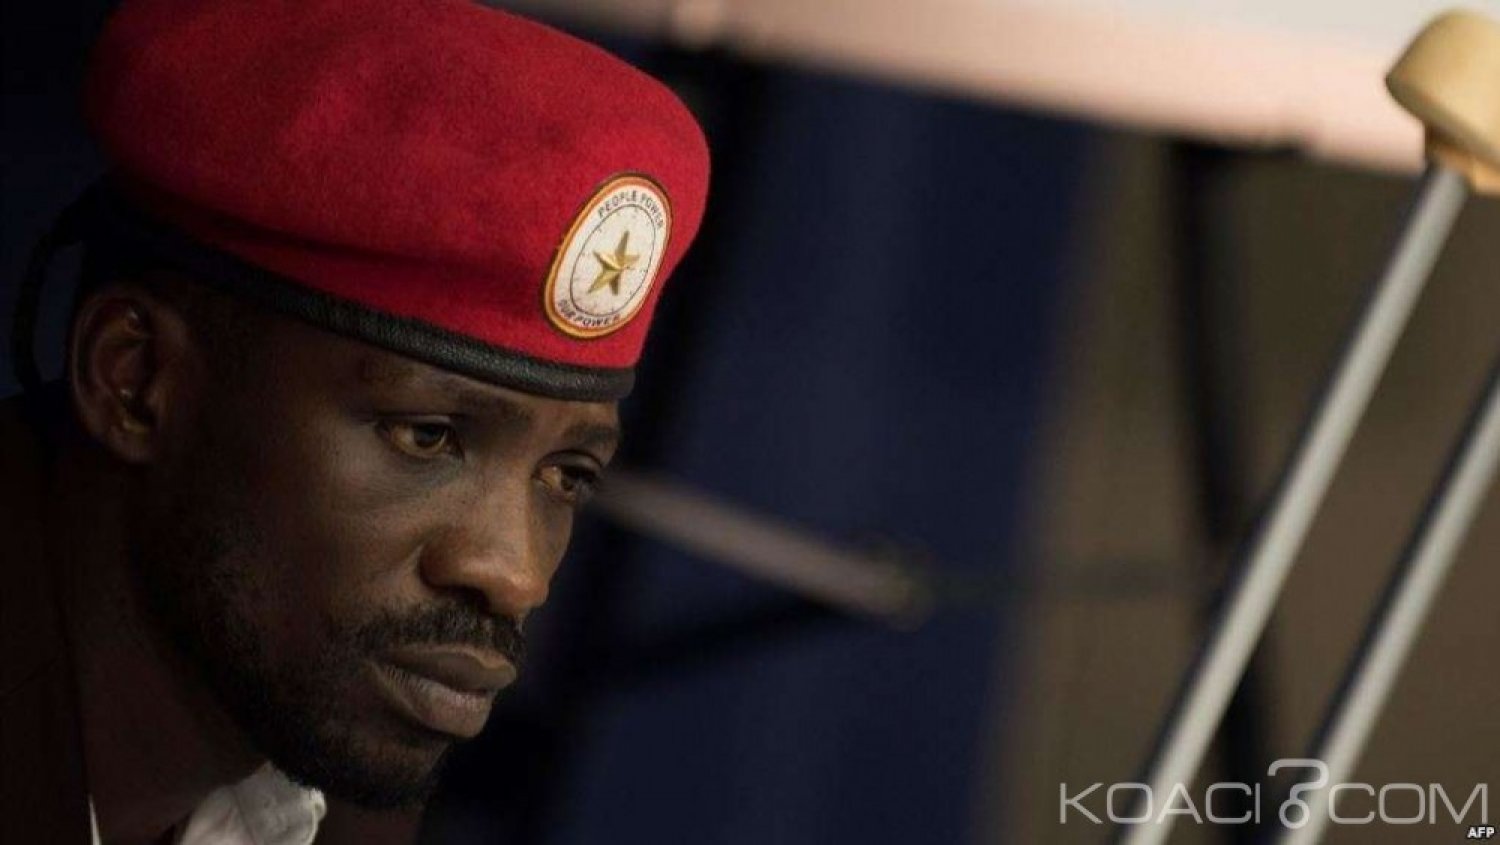 Ouganda :Le chanteur et opposant Bobi Wine inculpé et placé en détention